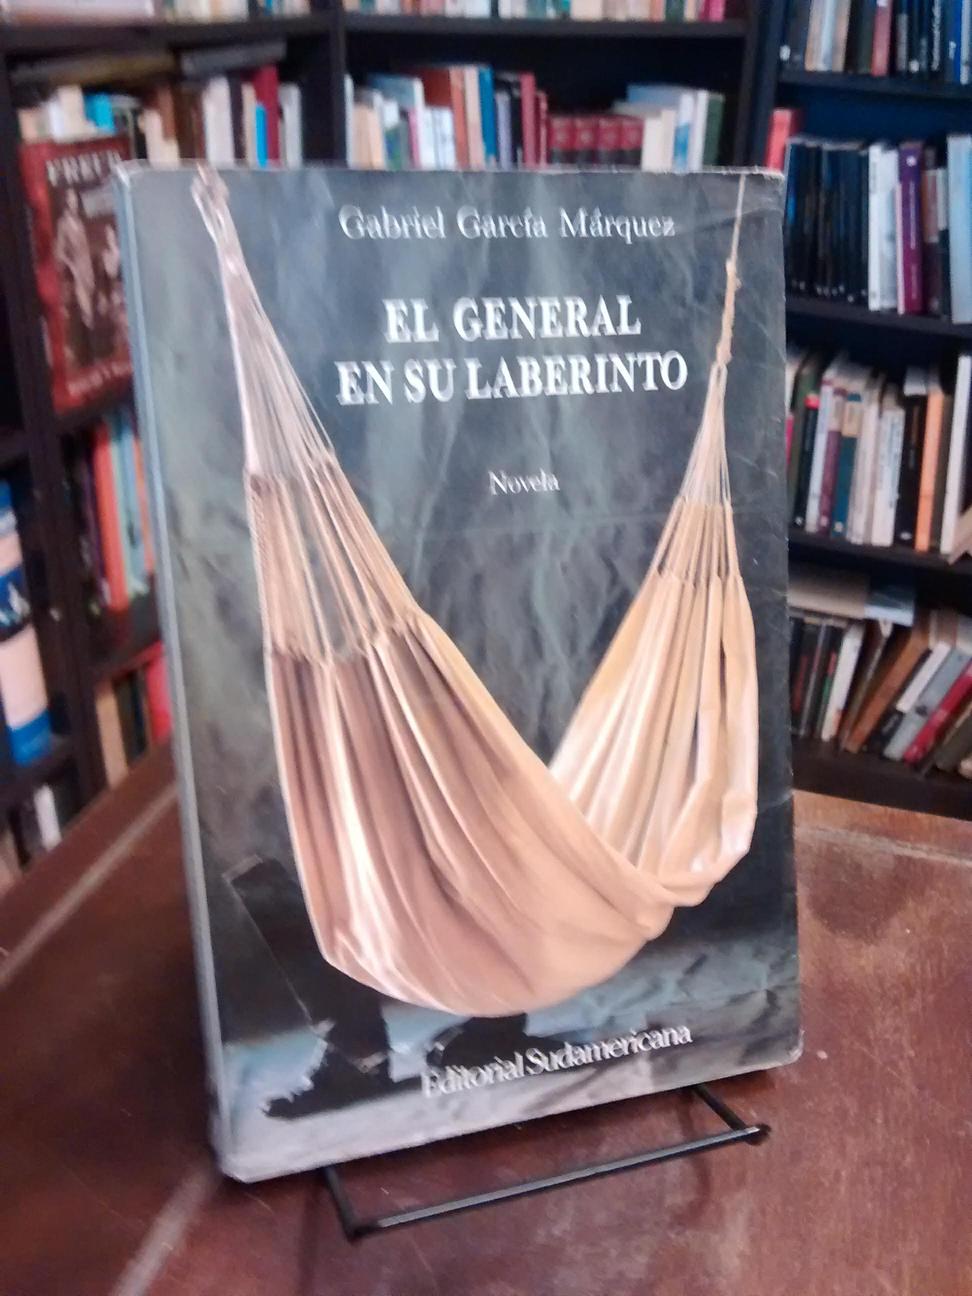 El general en su laberinto - Gabriel García Márquez